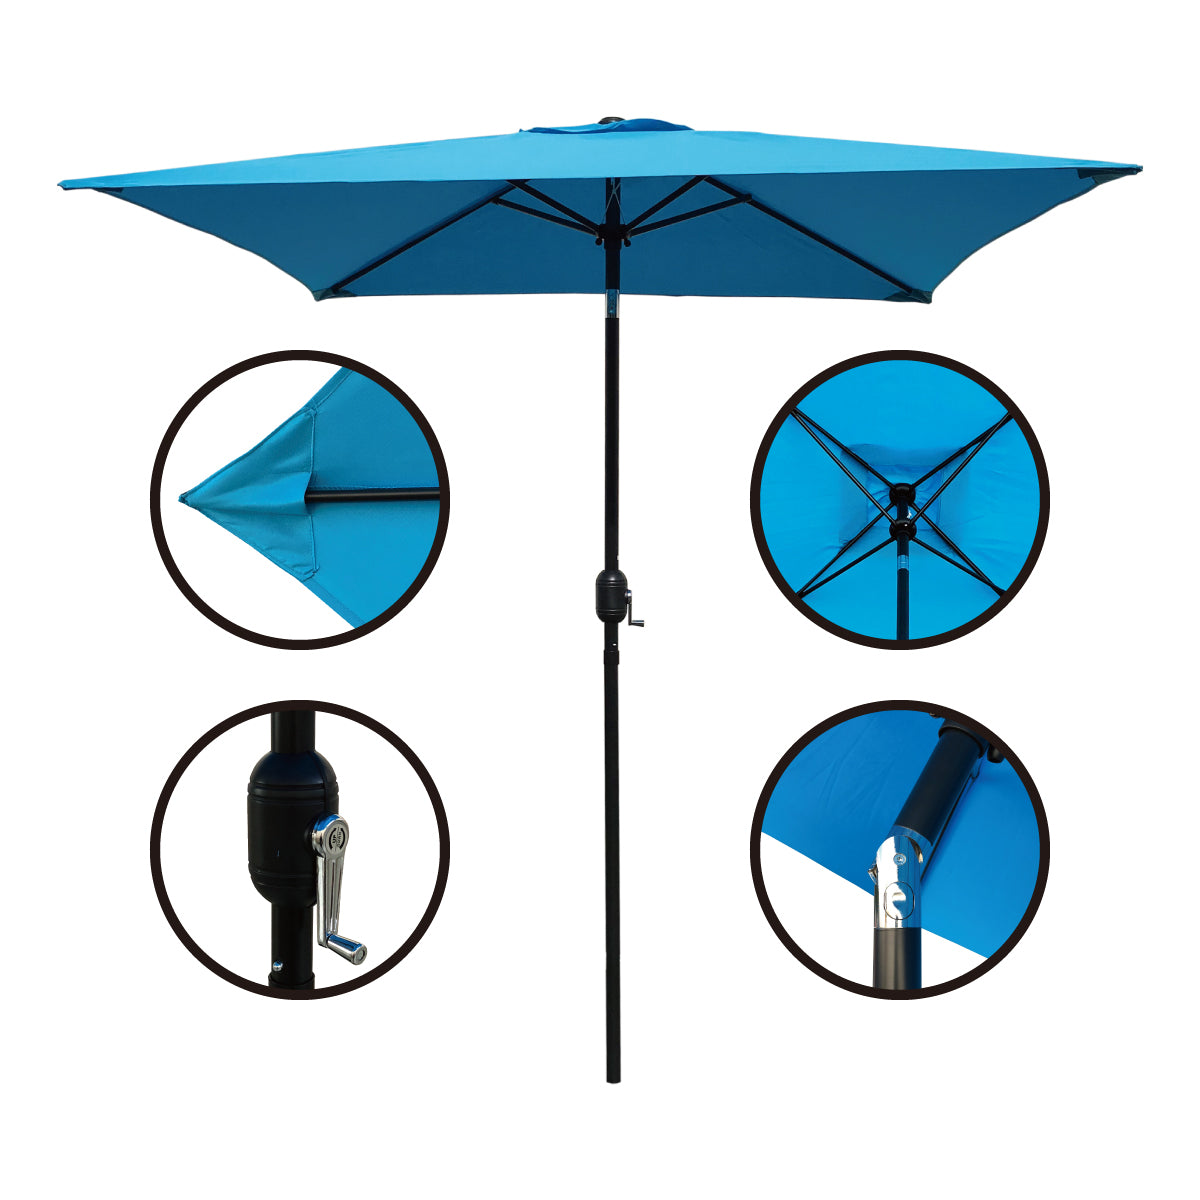 6.5ft Square Patio Umbrella